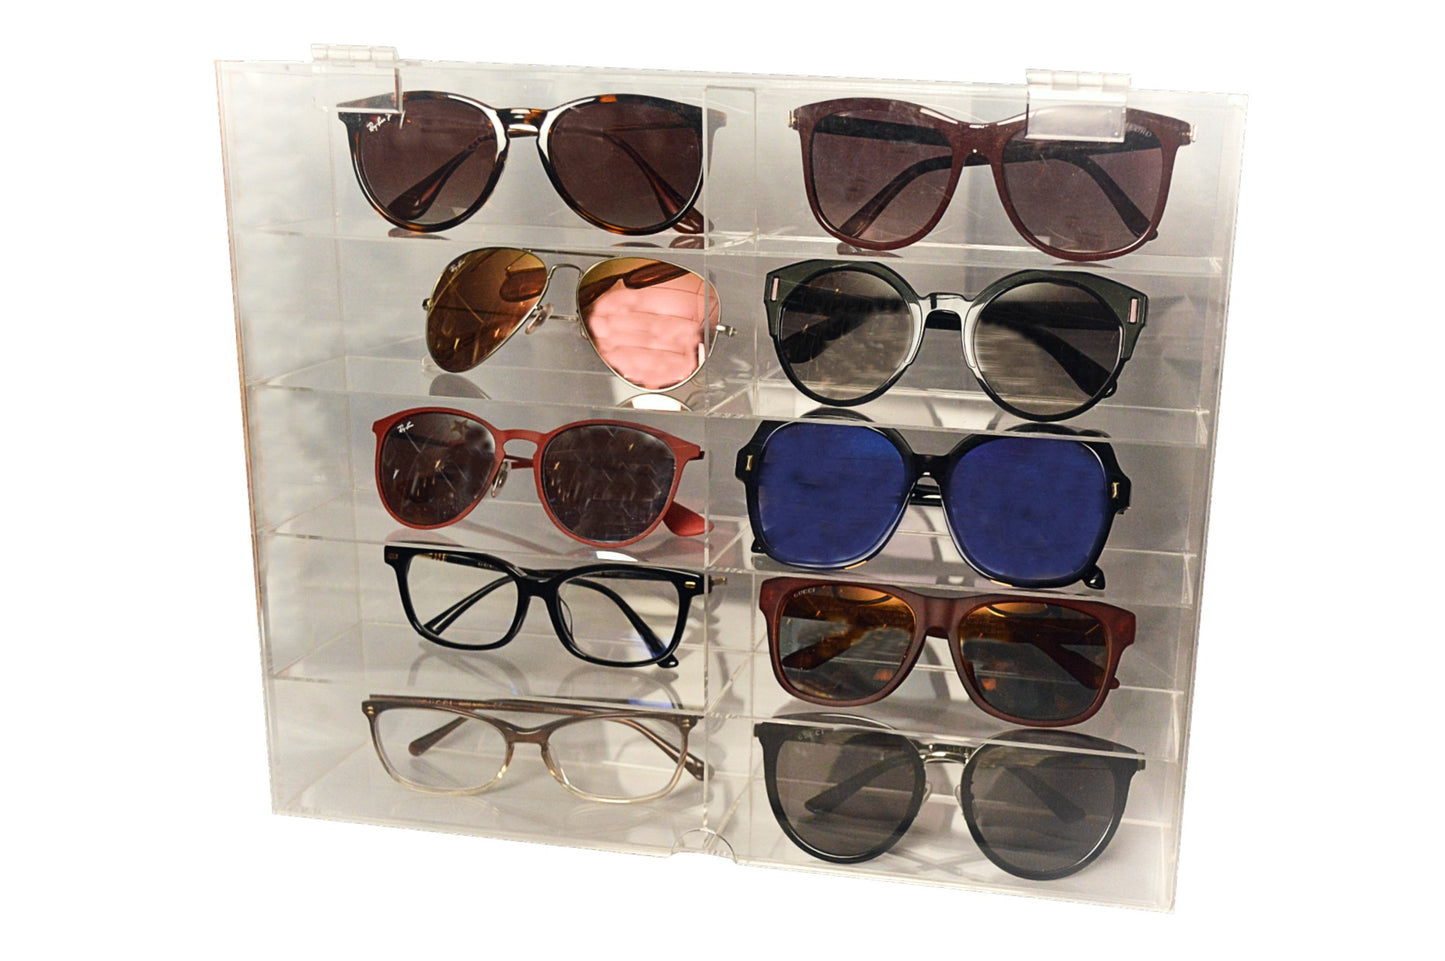 Acrylic Sunglasses Storage Box 10-Compartment